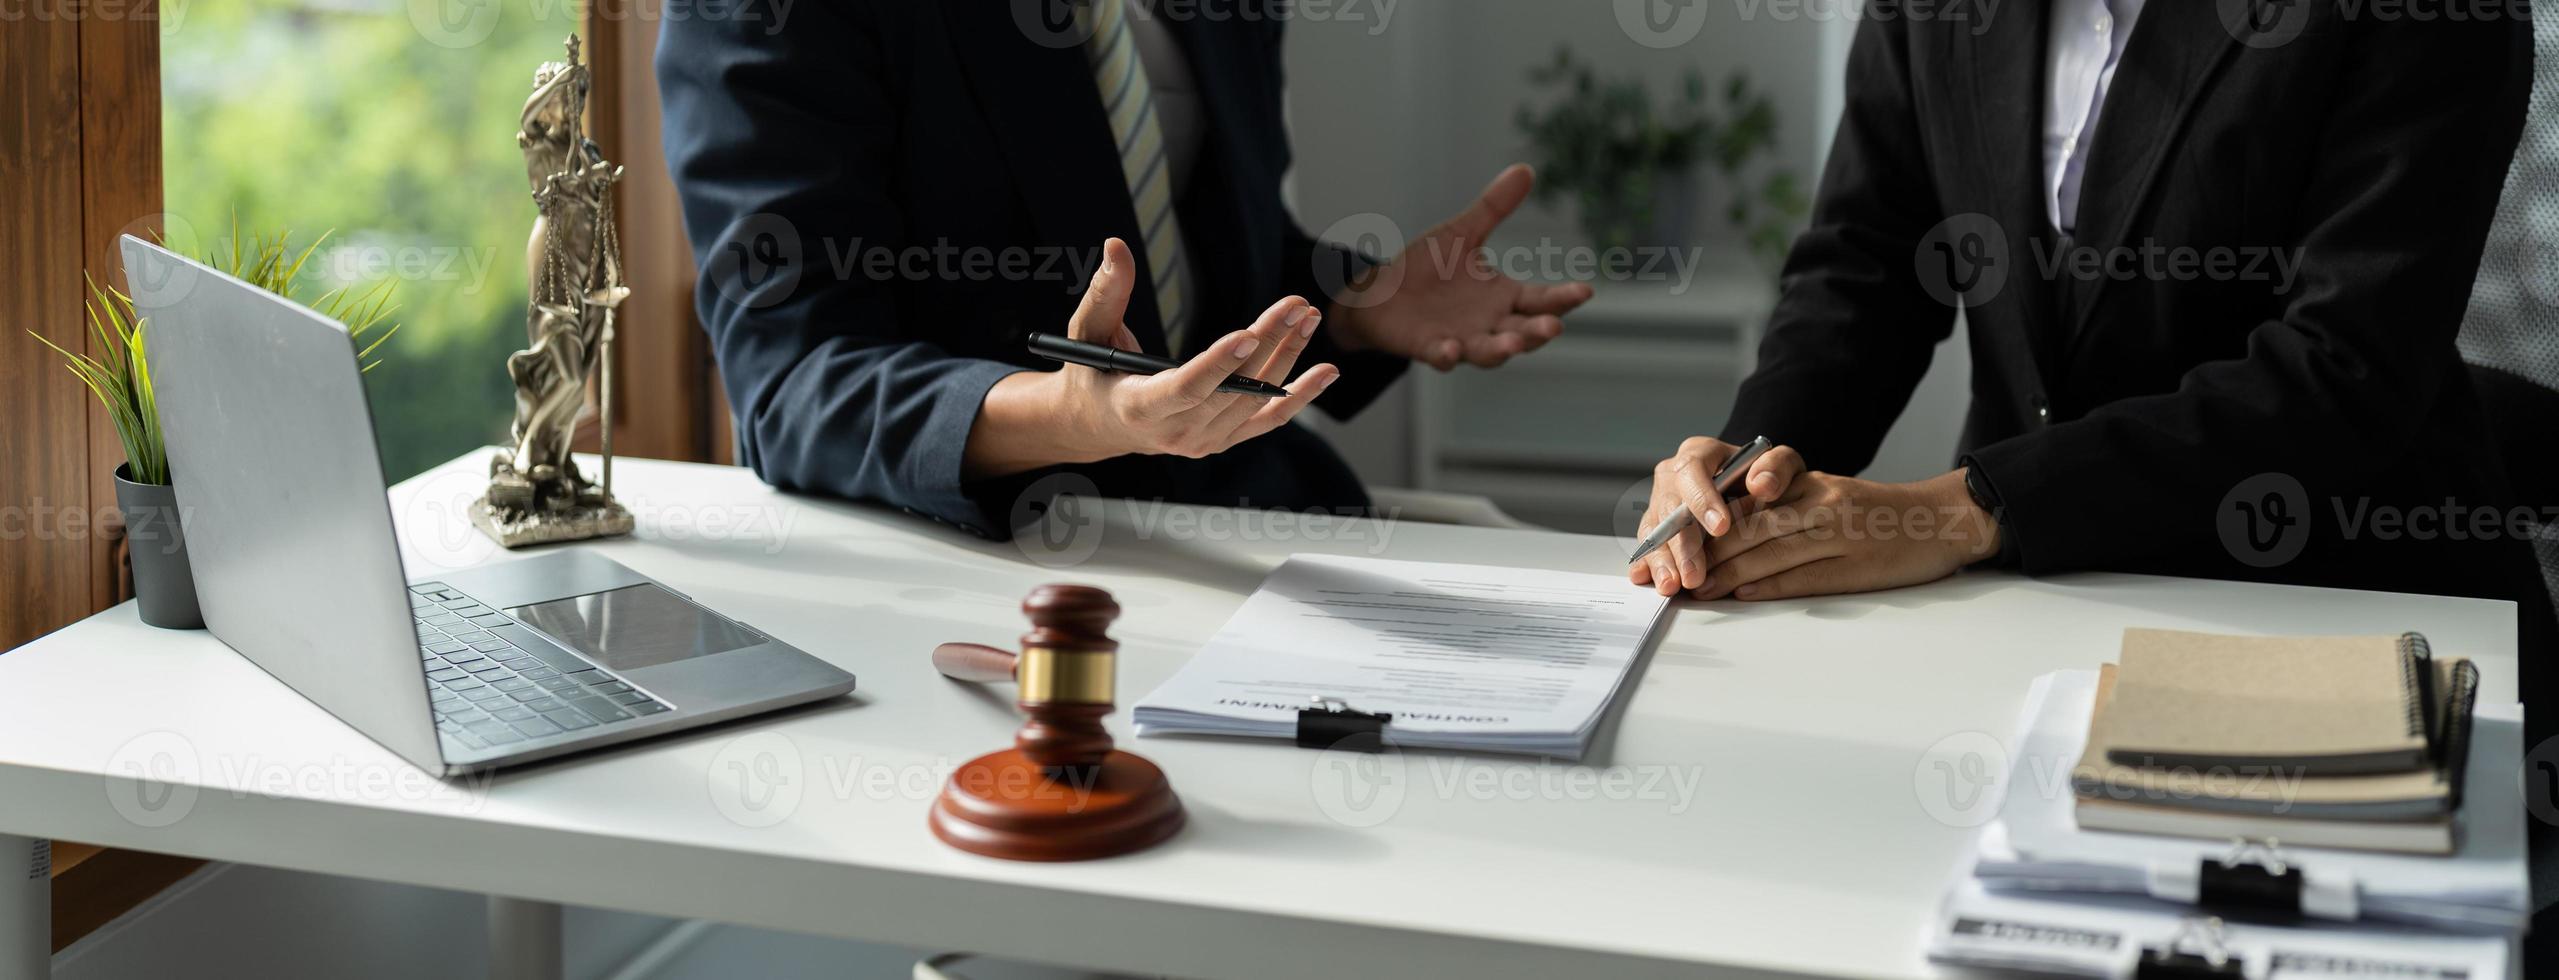 de afdeling juridische uitvoering maakt een afspraak met de klant om een bemiddelingsovereenkomst te ondertekenen om de schuld te betalen foto